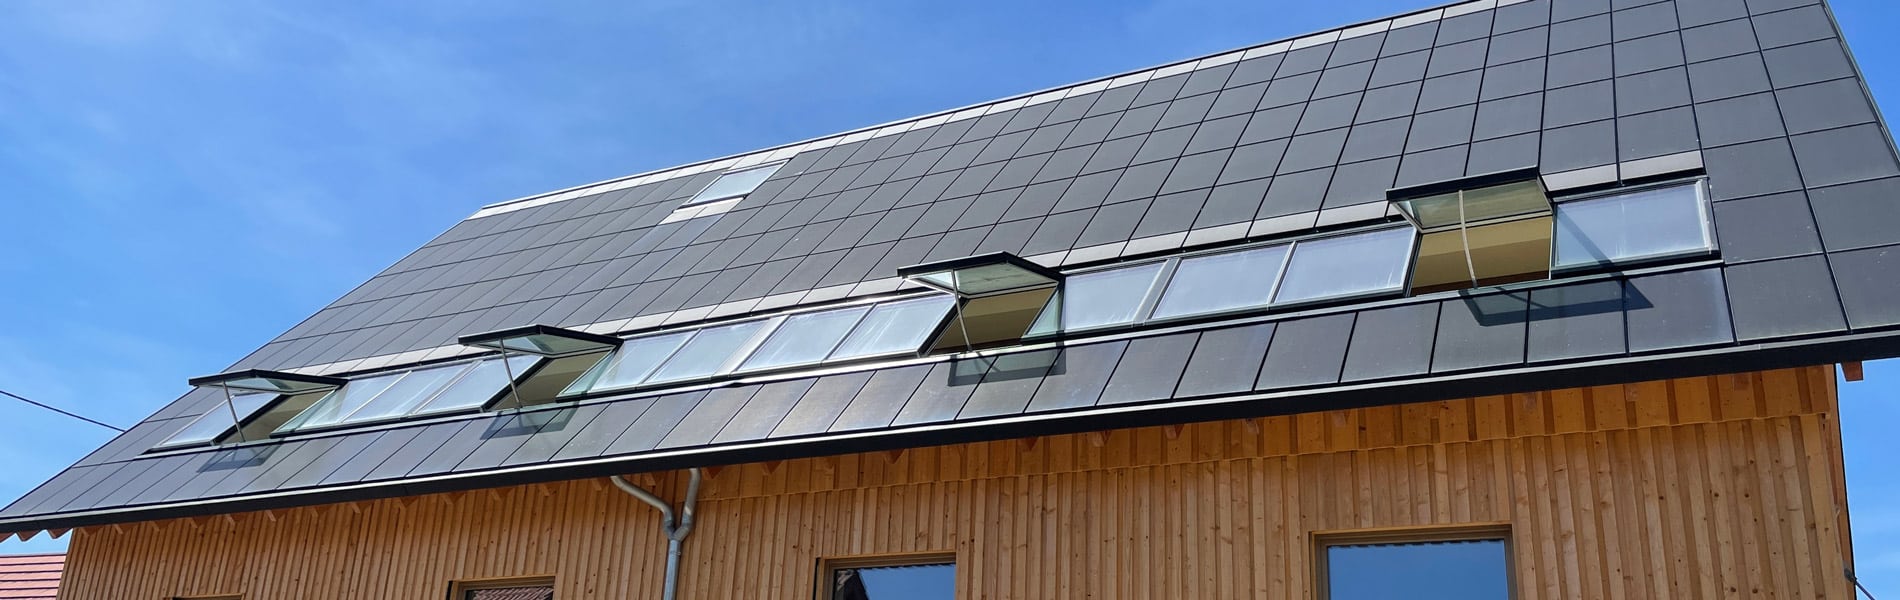 Lichtband-Fenster im Solardach mit geöffneten und geschlossenen Modulen